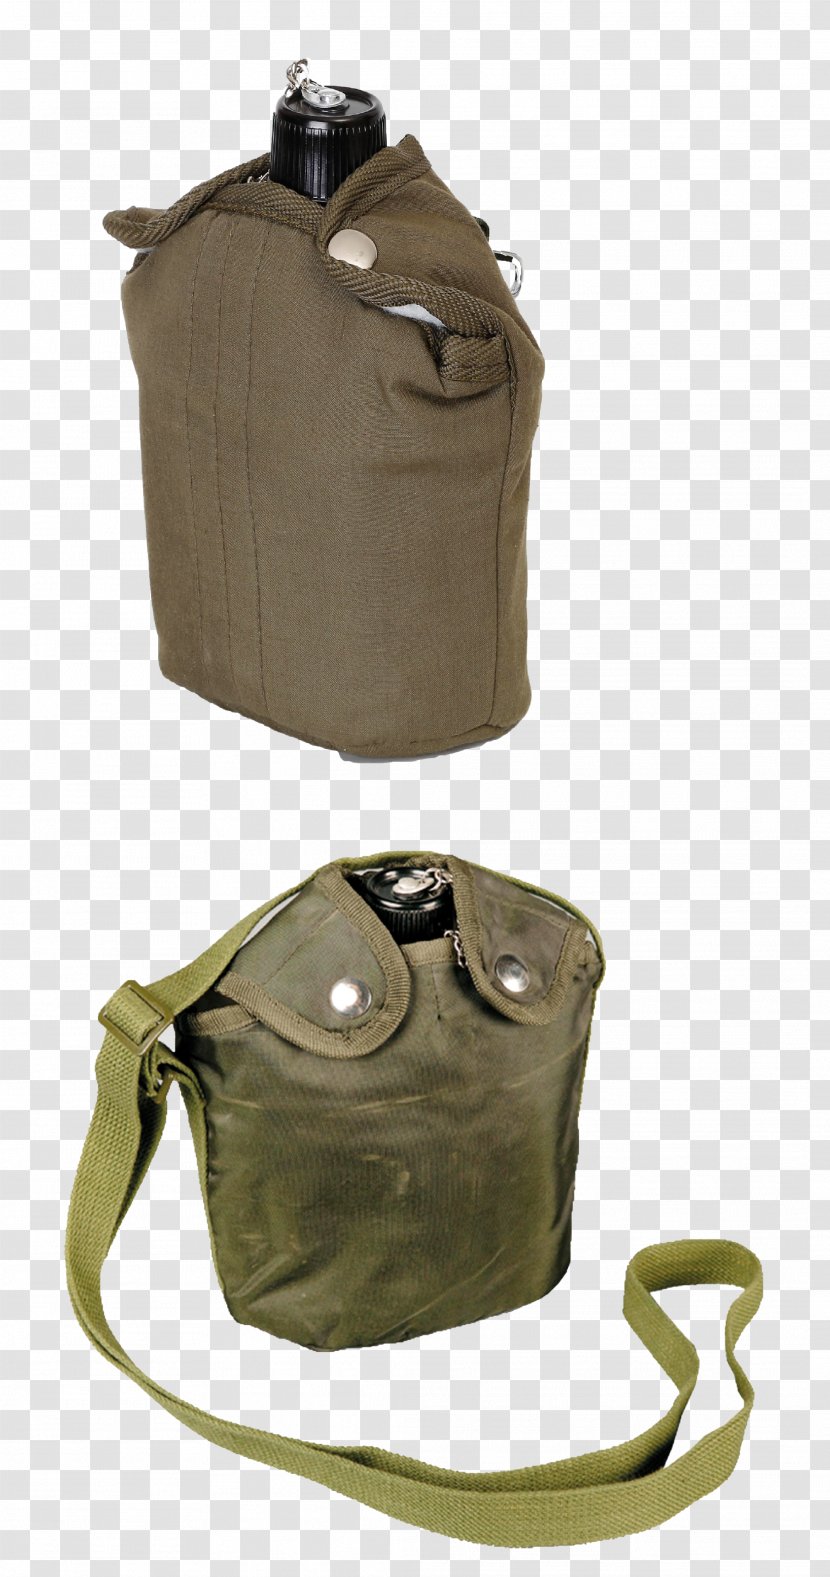 Handbag Weapon Bullet Proof Vests Textile - Shoulder Bag - Motorcycle Pictures Transparent PNG